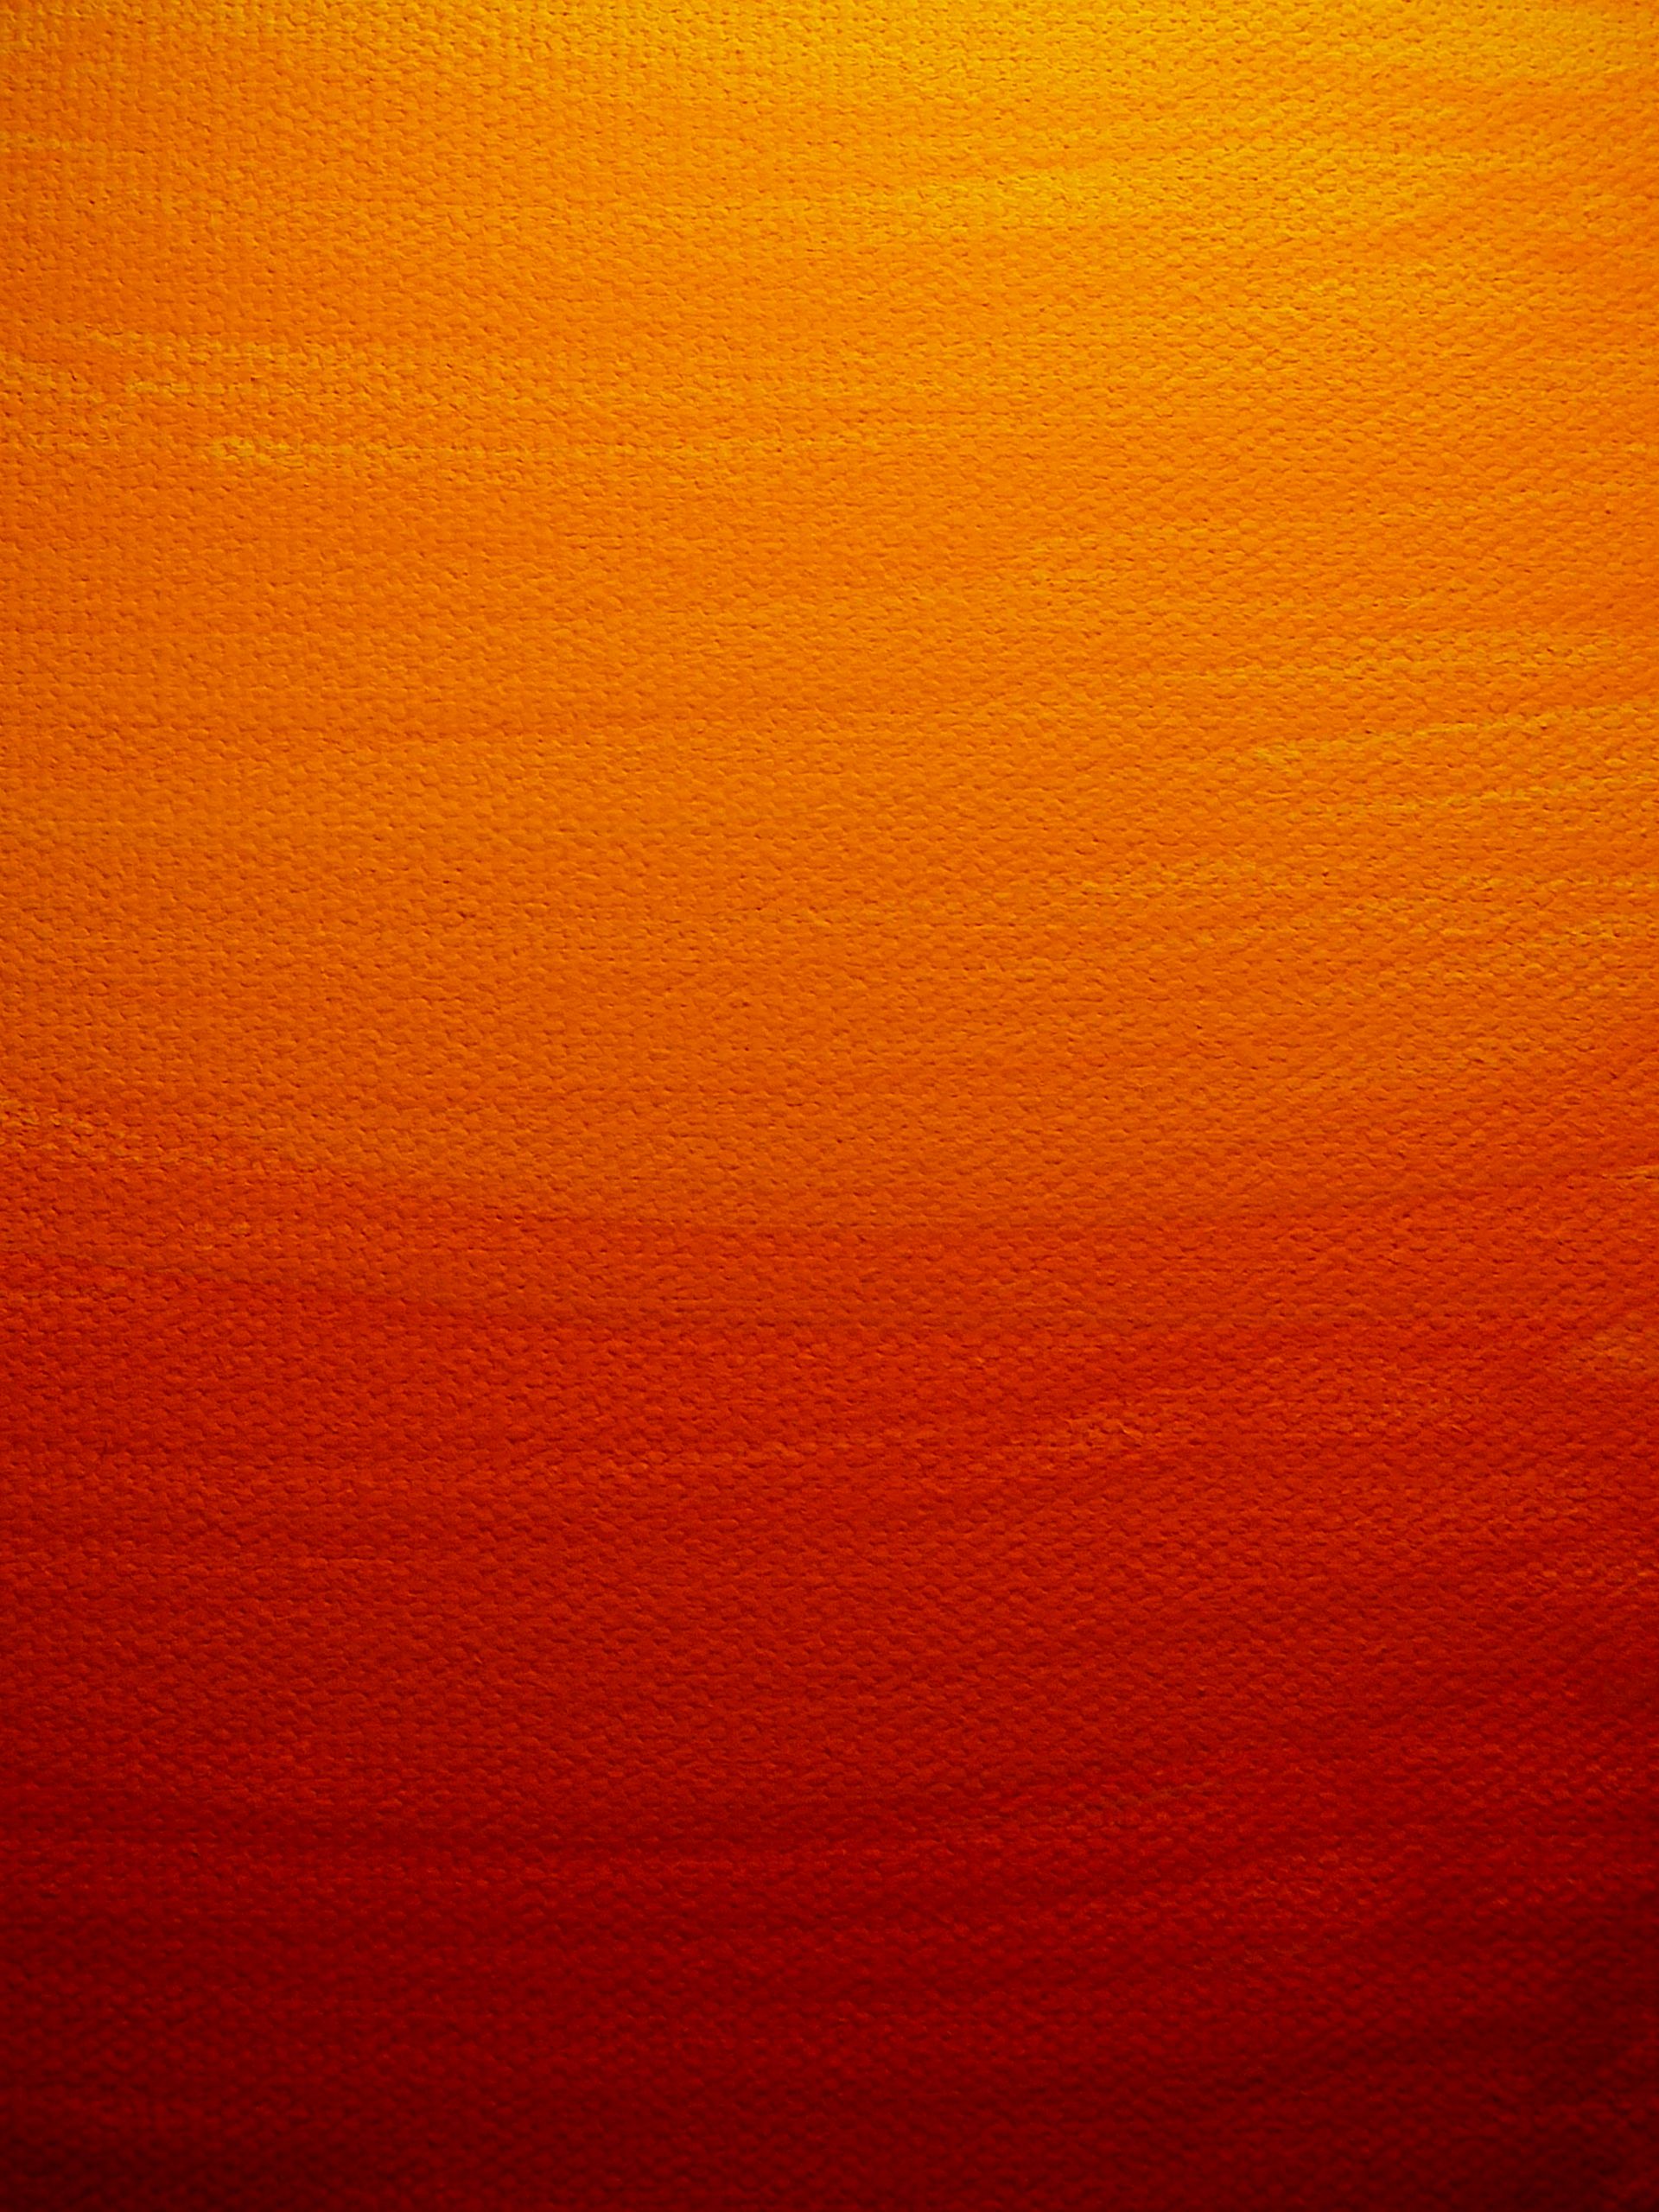 Paint On S Orange Wallpaper Sunset Painting Texture